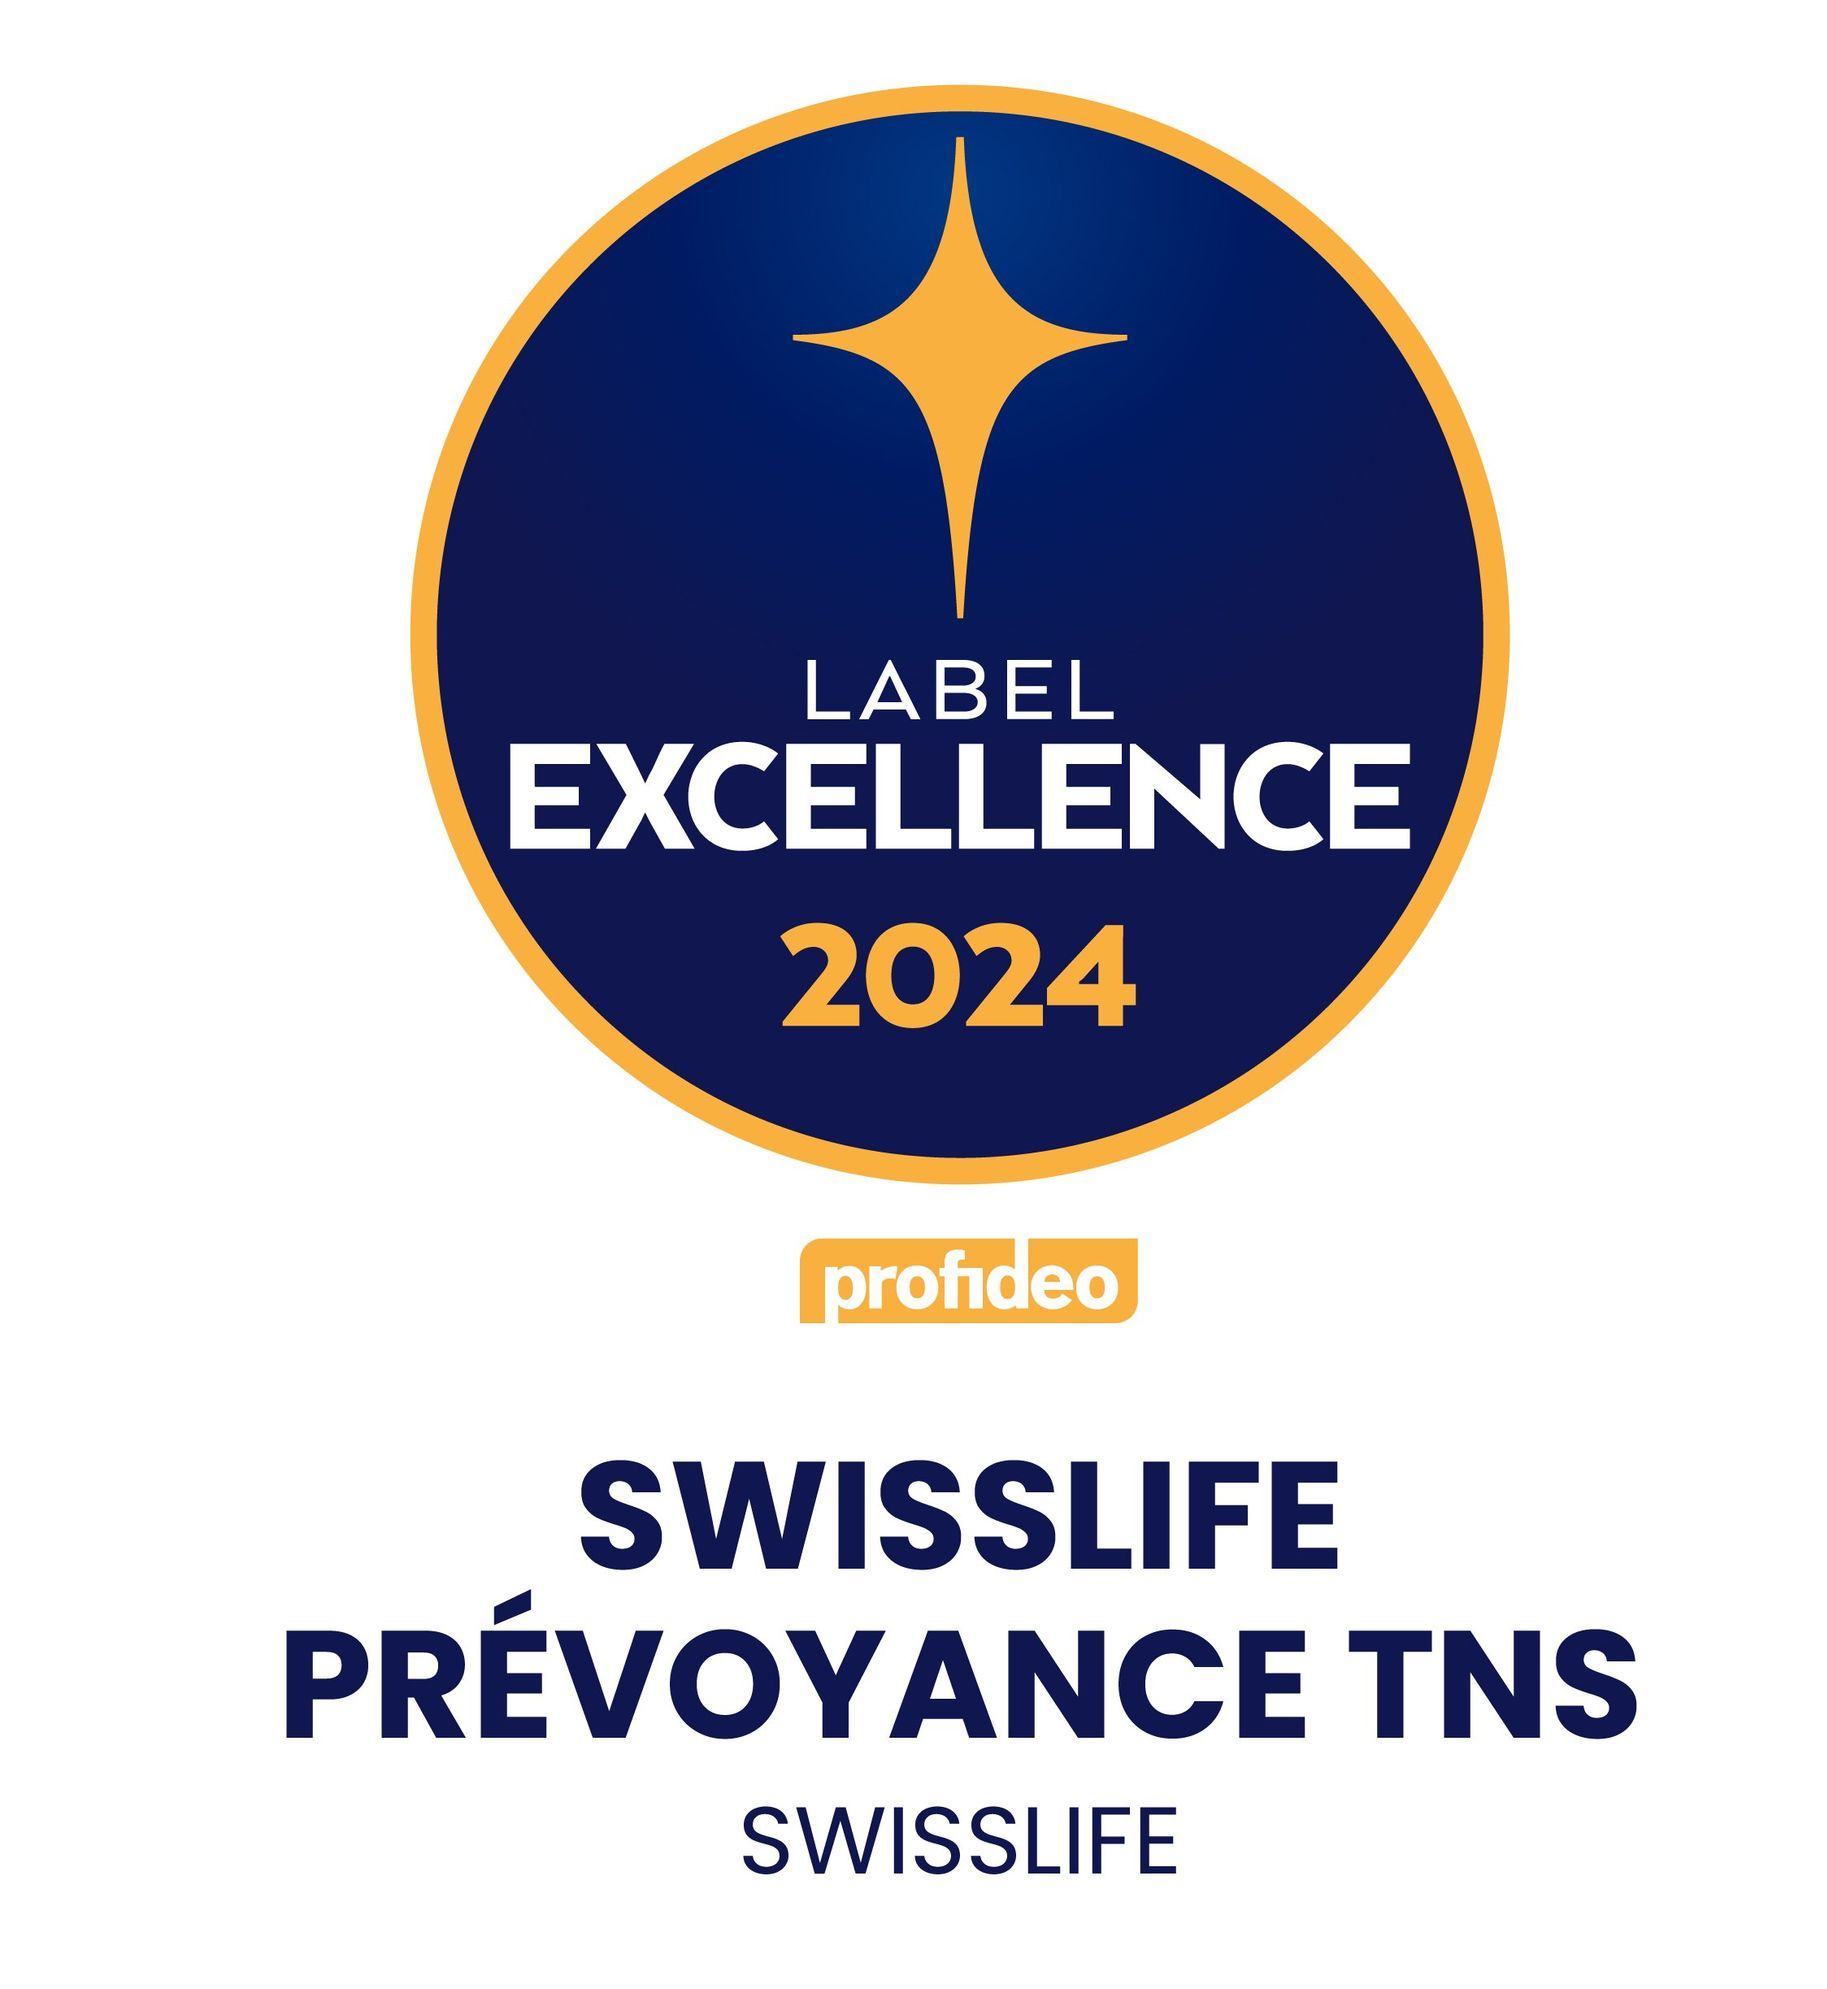 La qualité des produits de nos partenaires encore récompensée: Swisslife prévoyance TNS